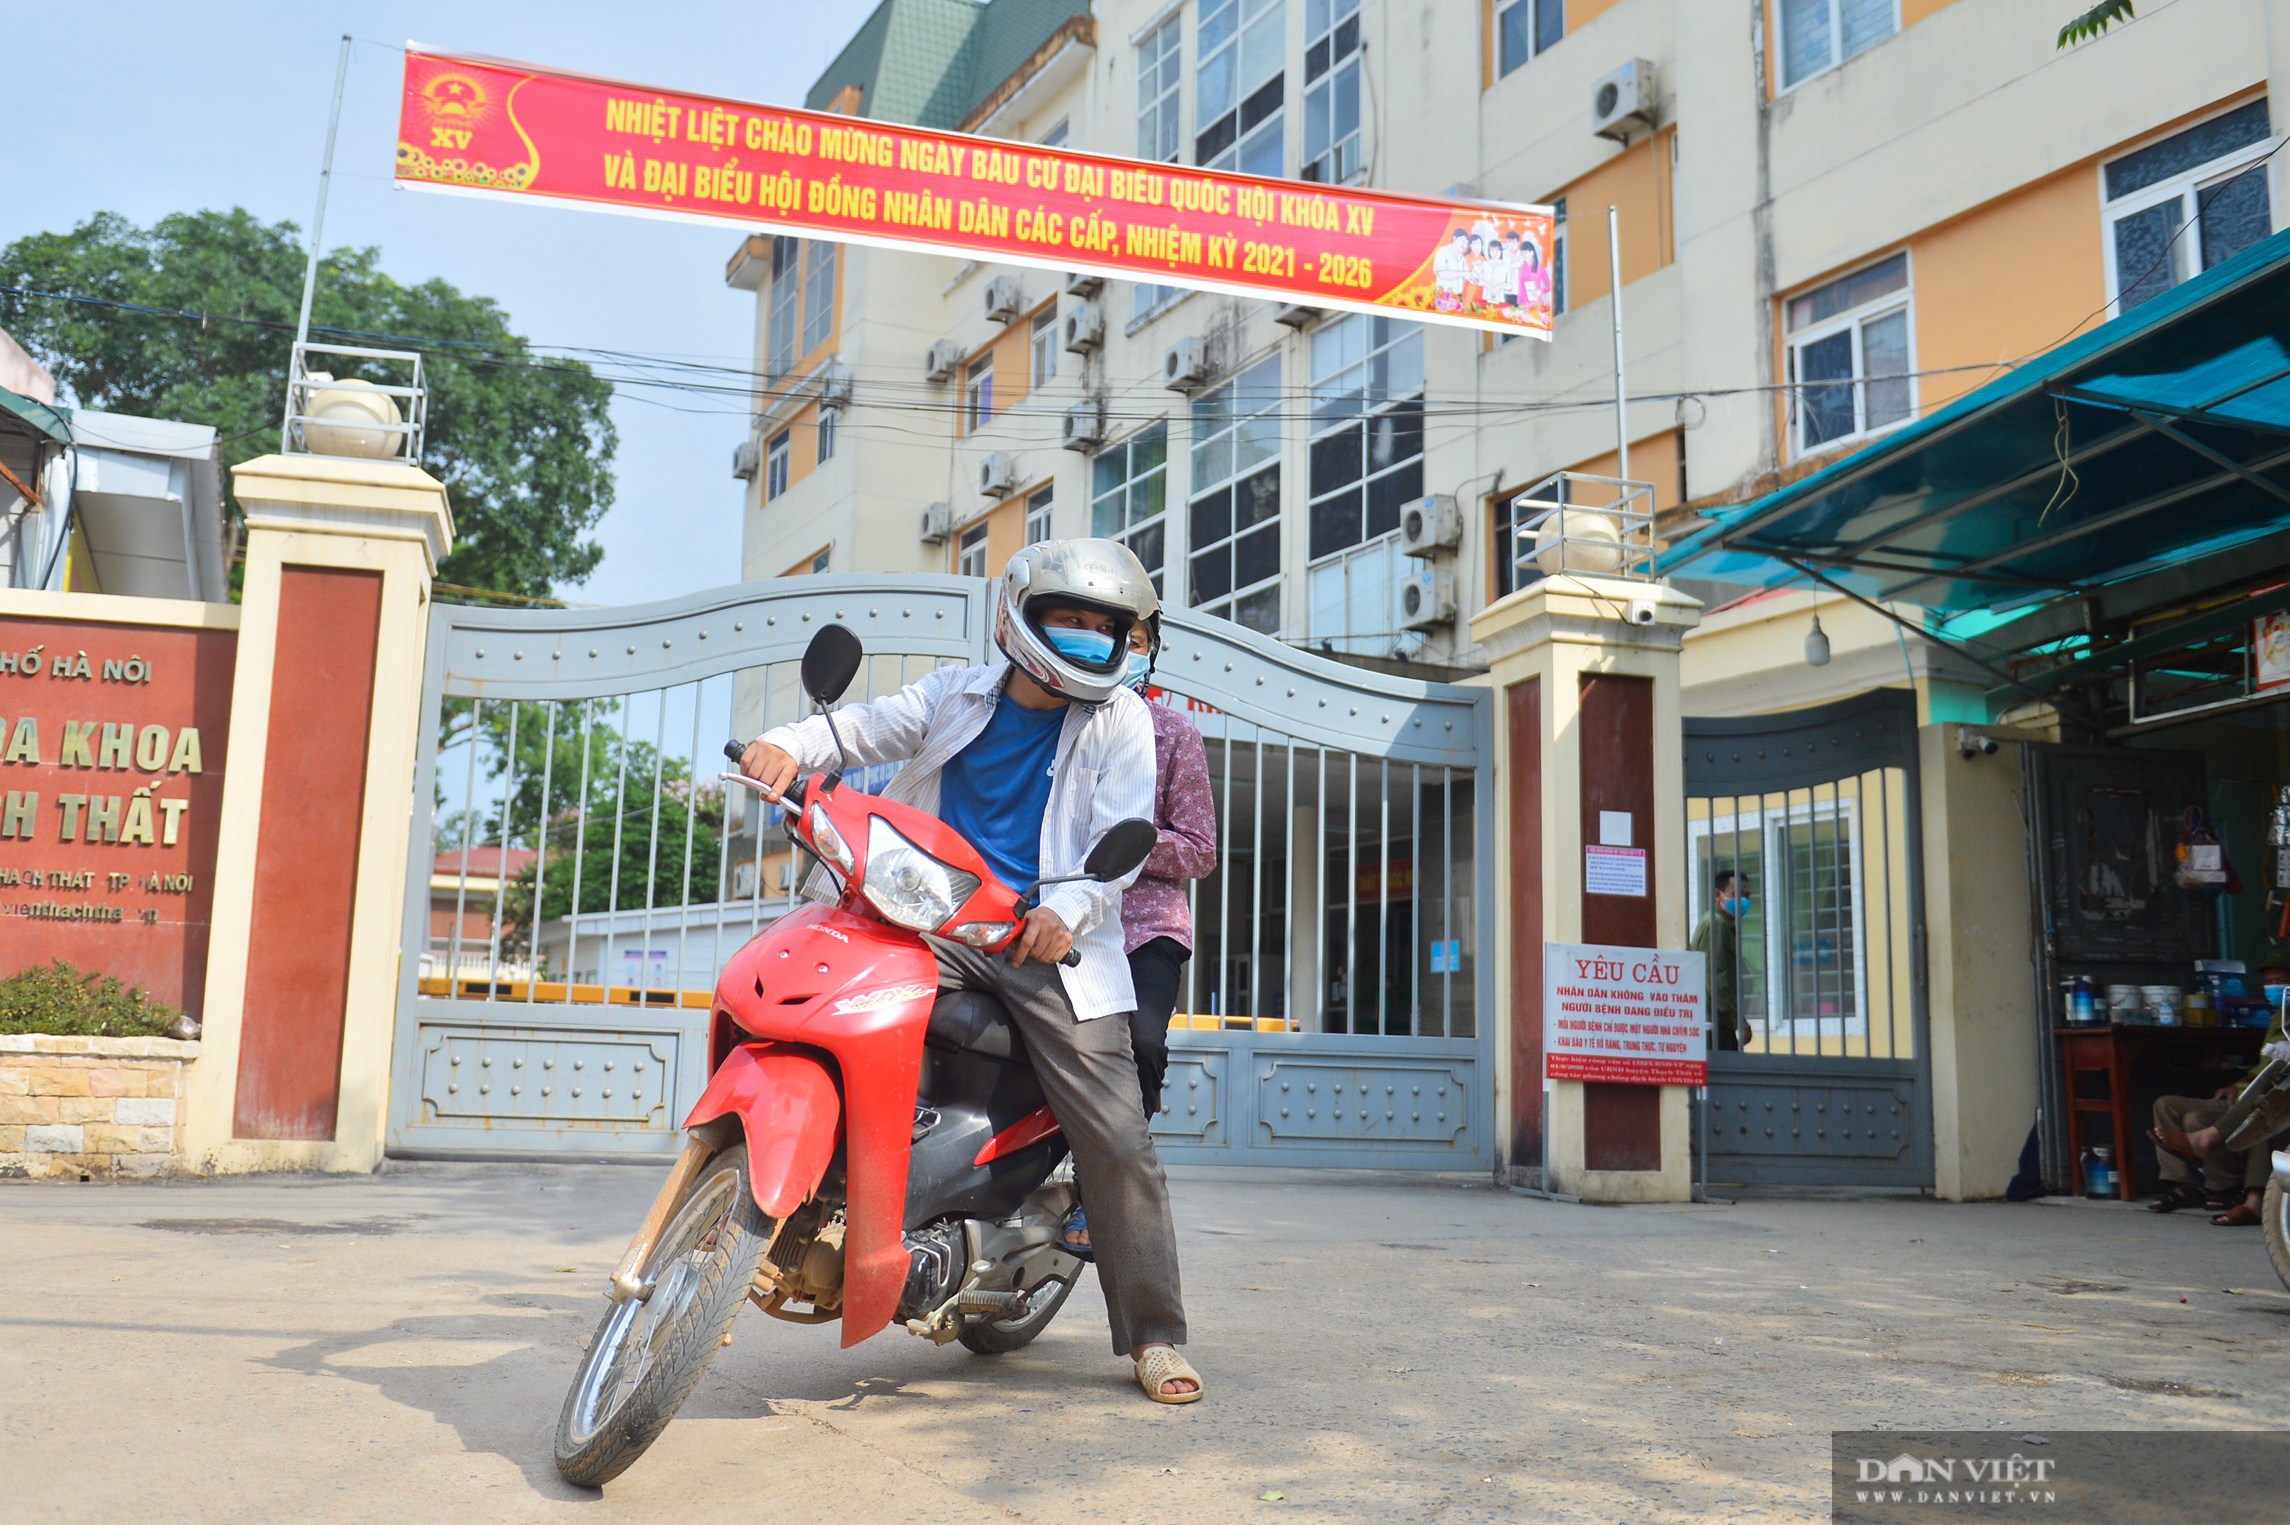 Một bệnh viện của Hà Nội ngừng tiếp bệnh nhân do có ca nhiễm Covid-19 mới - Ảnh 10.